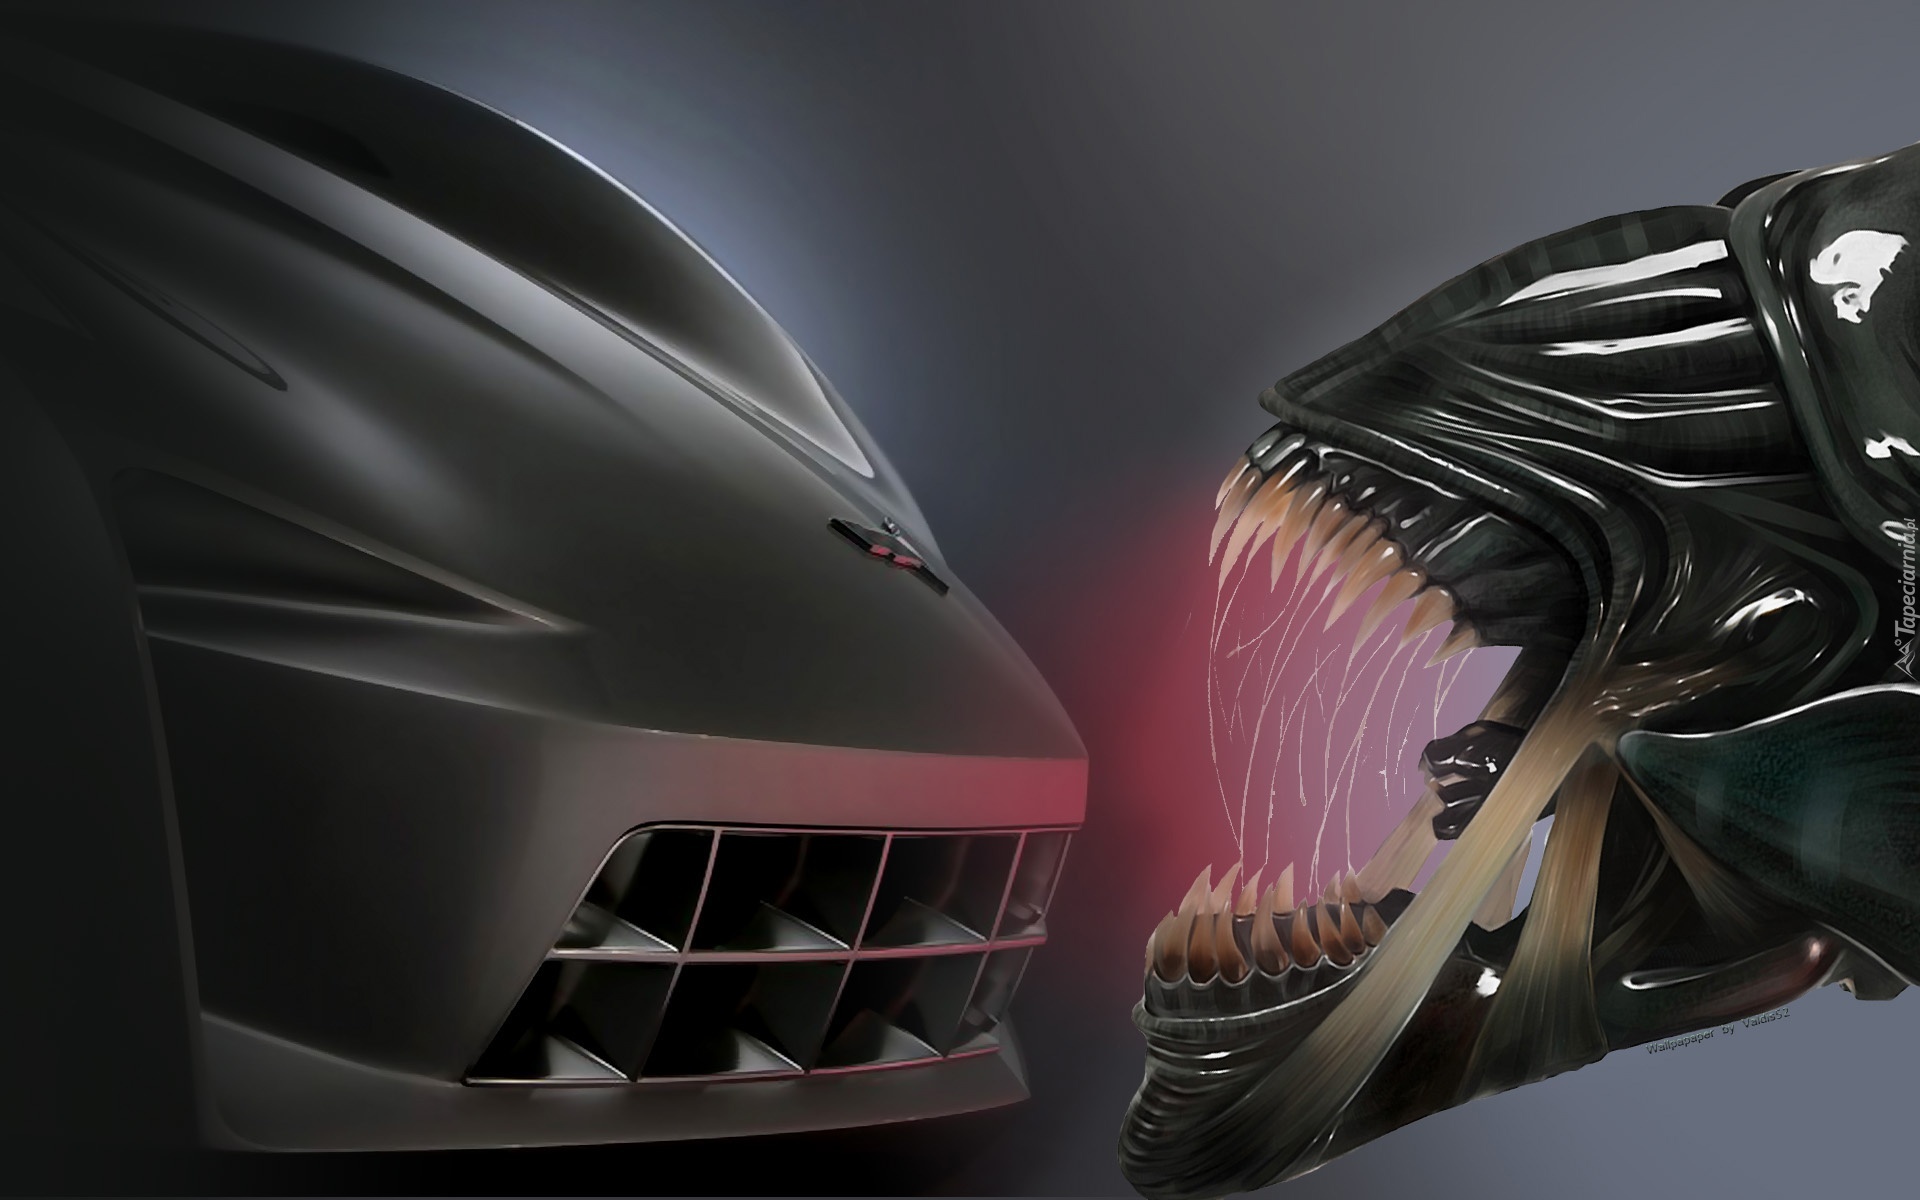 Corvette, vs, Alien